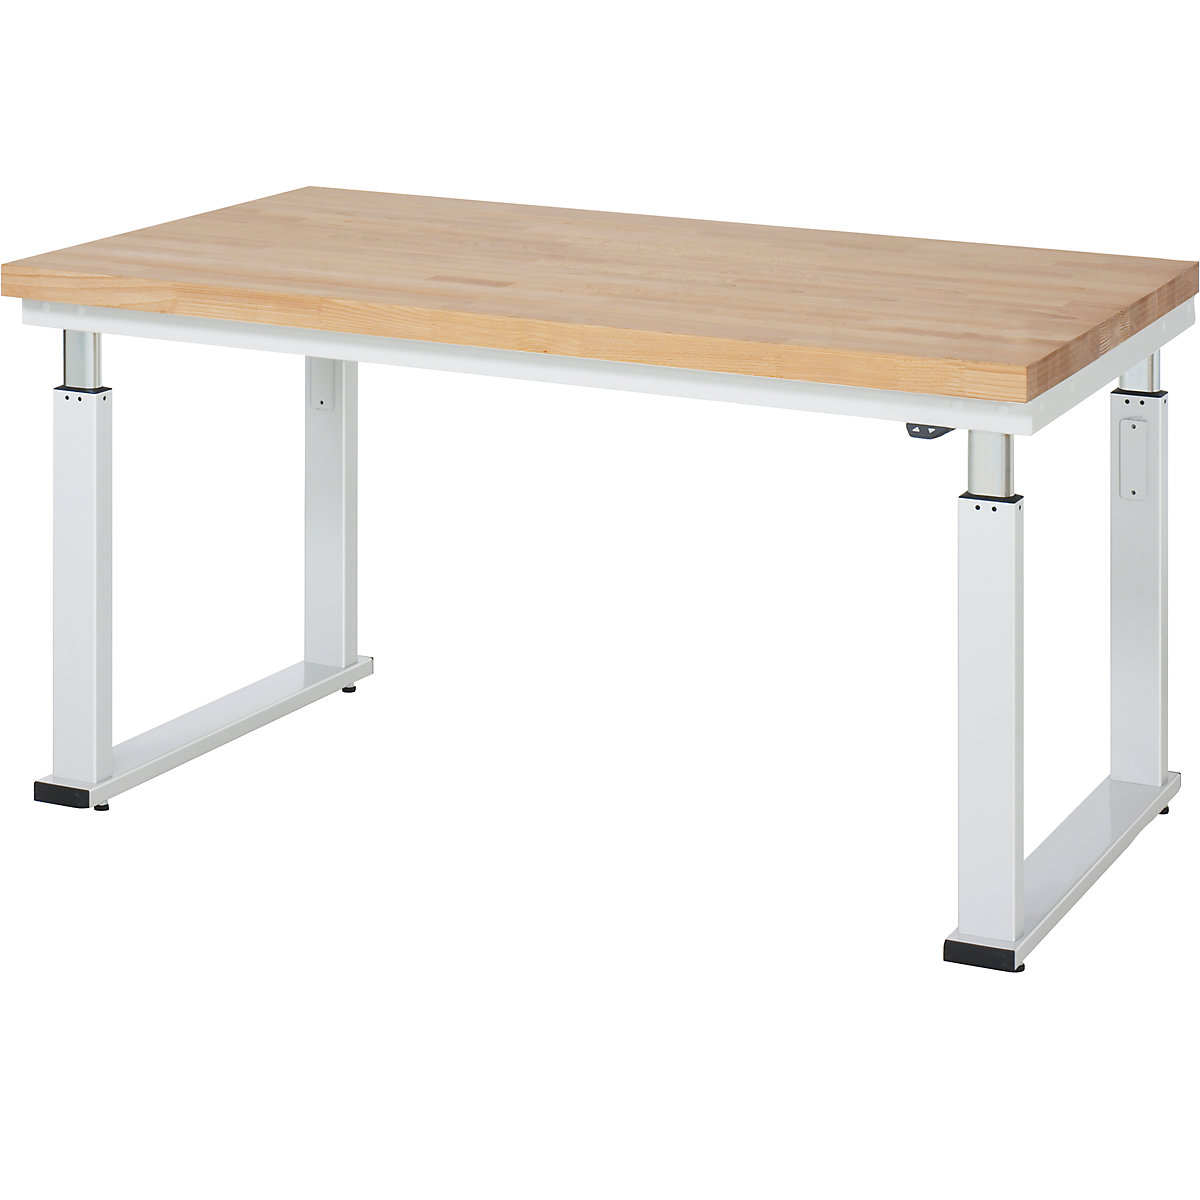 Psací stůl s elektrickým přestavováním výšky – RAU, bukový masiv, nosnost 600 kg, š x h 1500 x 900 mm-7